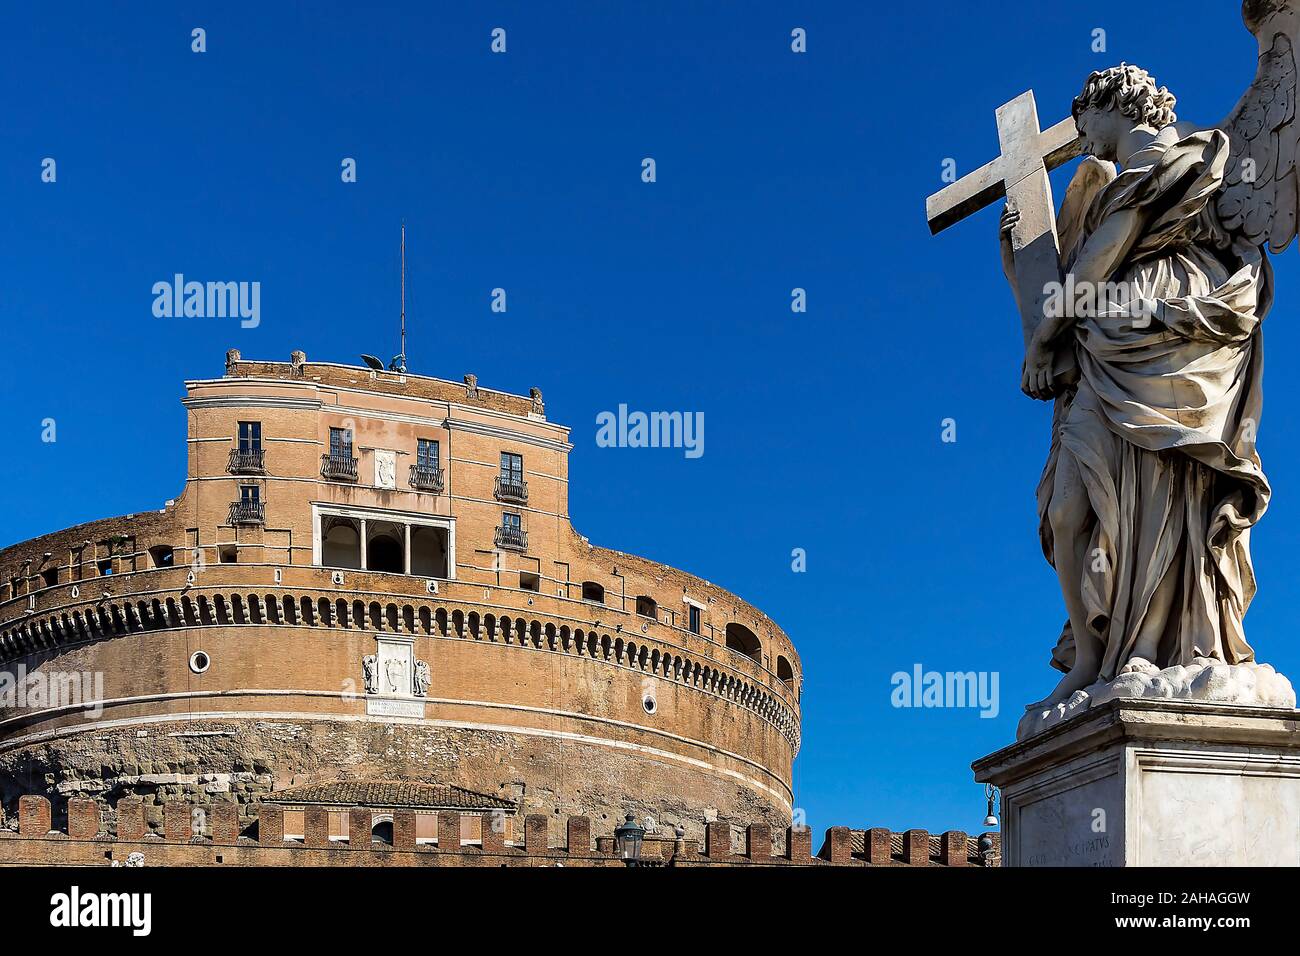 Die Engelsburg in Rom, Italien, Mausoleum, Kastellburg, Kaiser Hadrian, Stock Photo